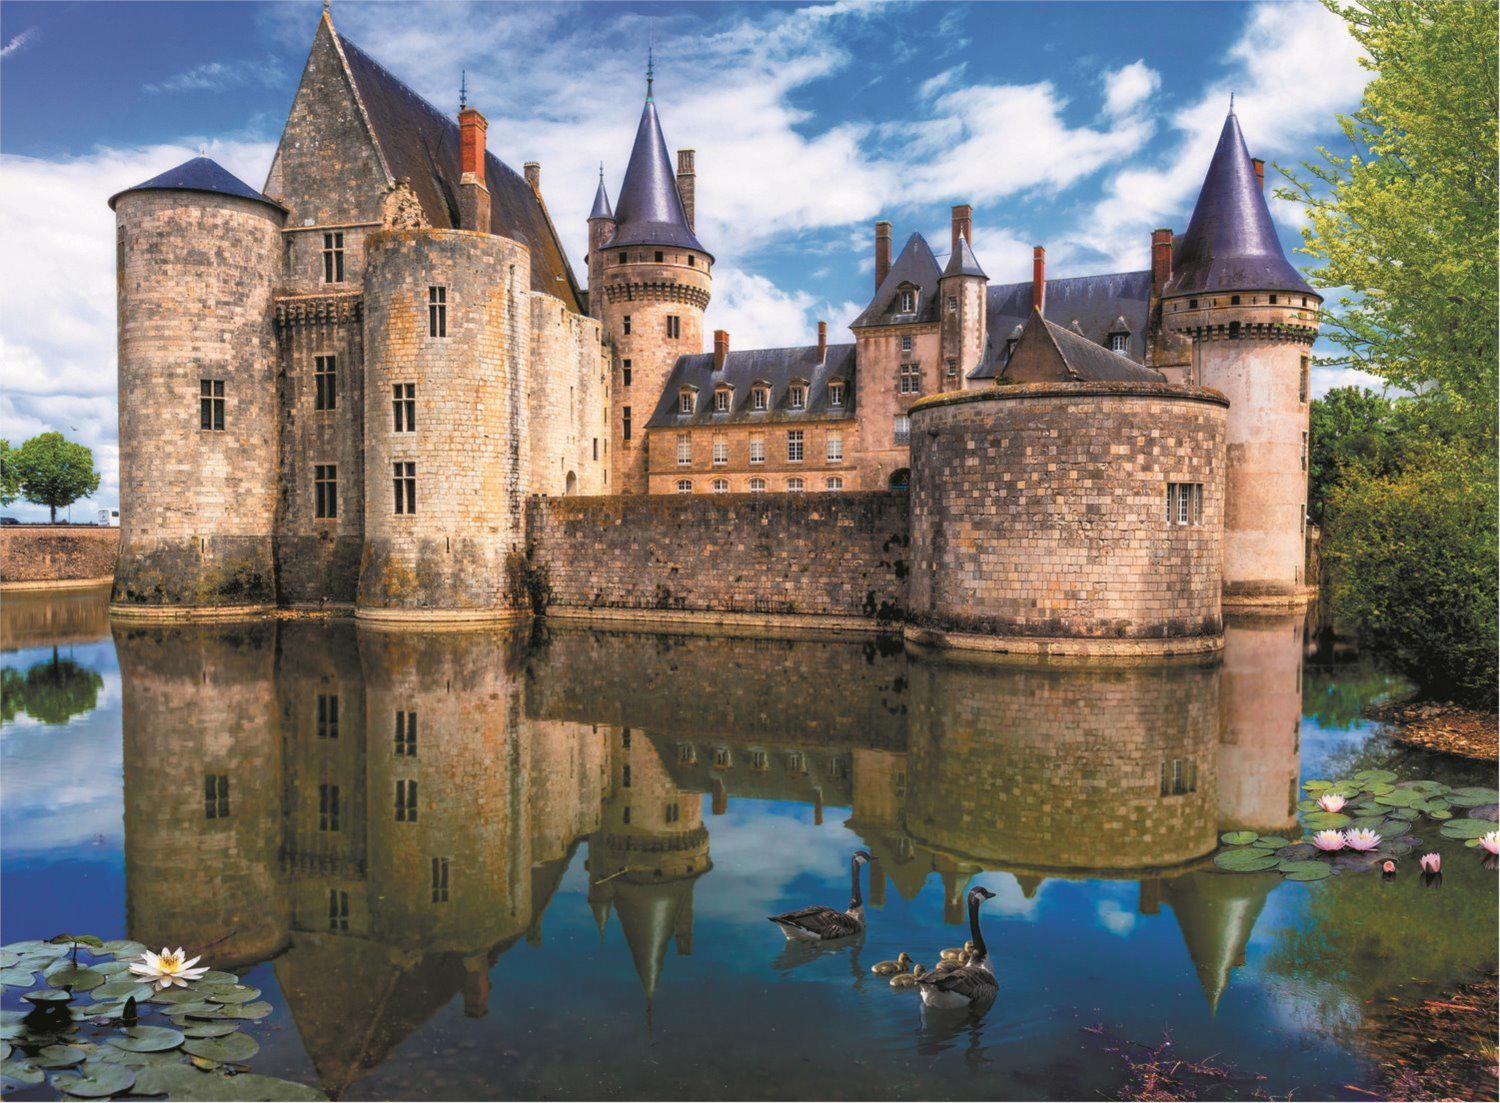 Puzzle Повредена кутия Sully-sur-Loire Castle, France II